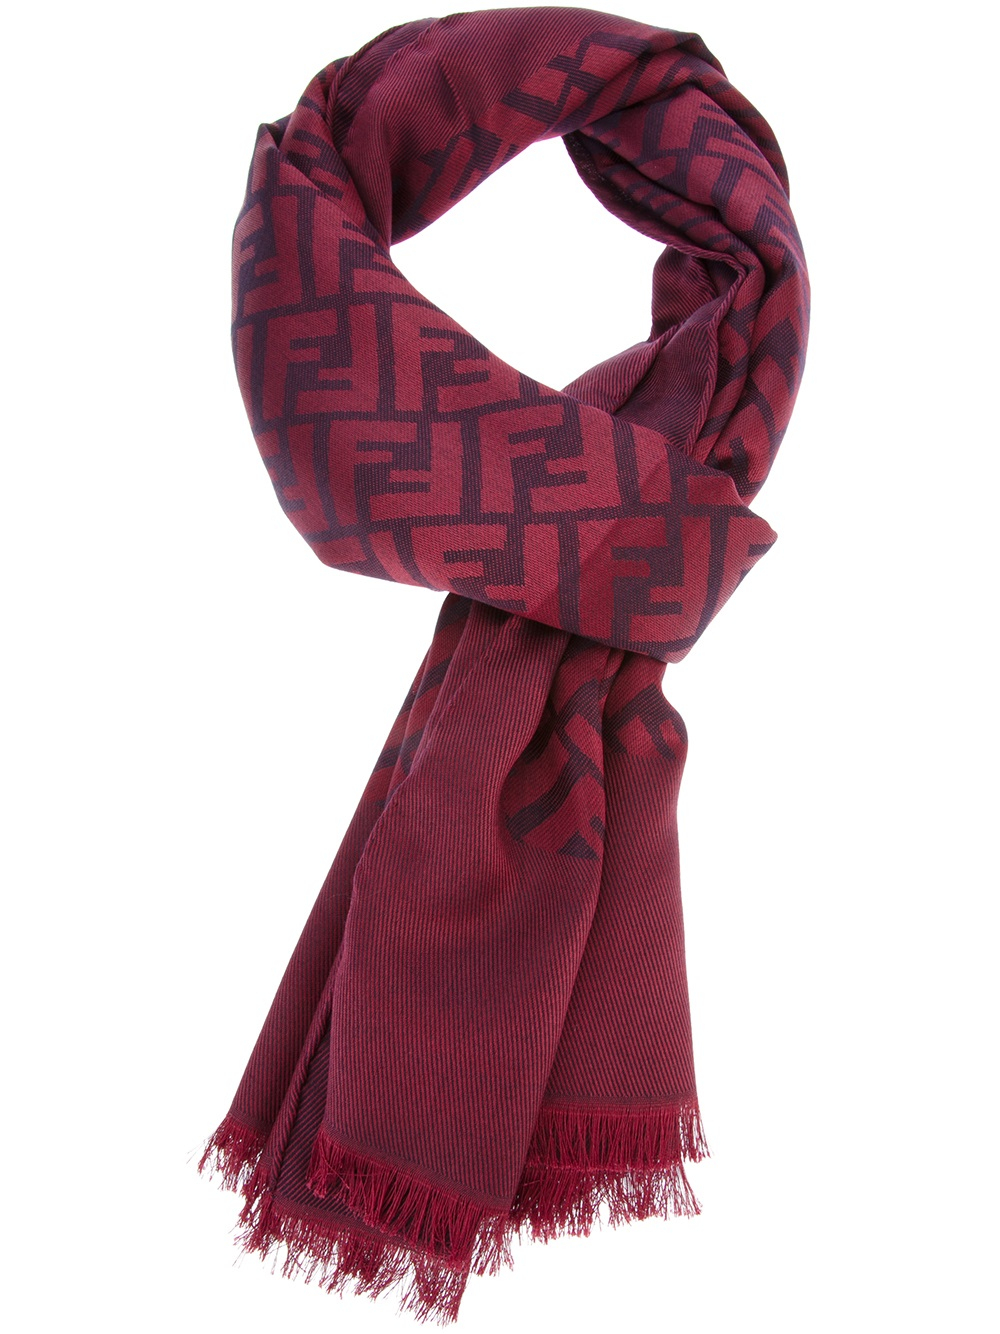 red fendi scarf